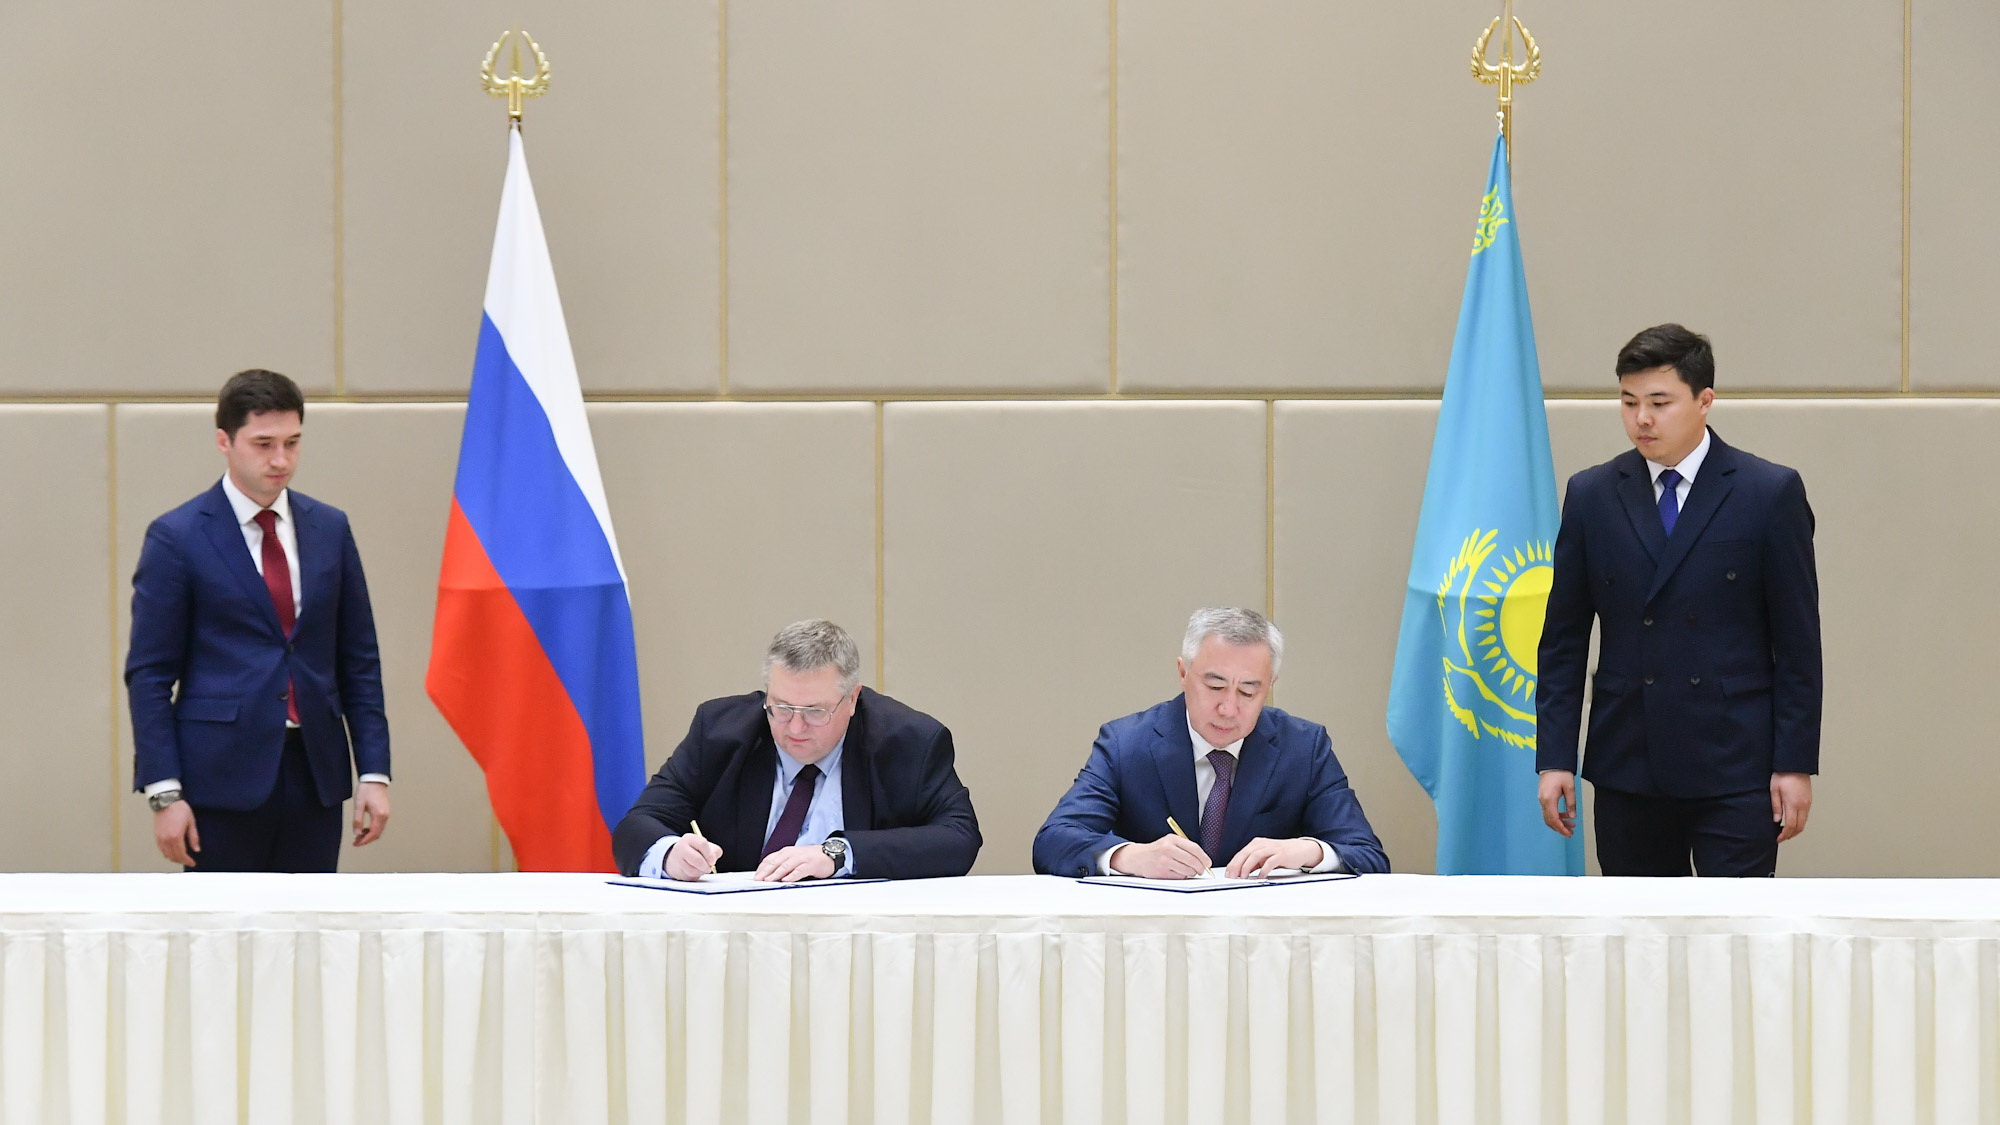 Казахстан и Россия договорились взаимно расширять авиасообщение и увеличивать транзитные перевозки между странами